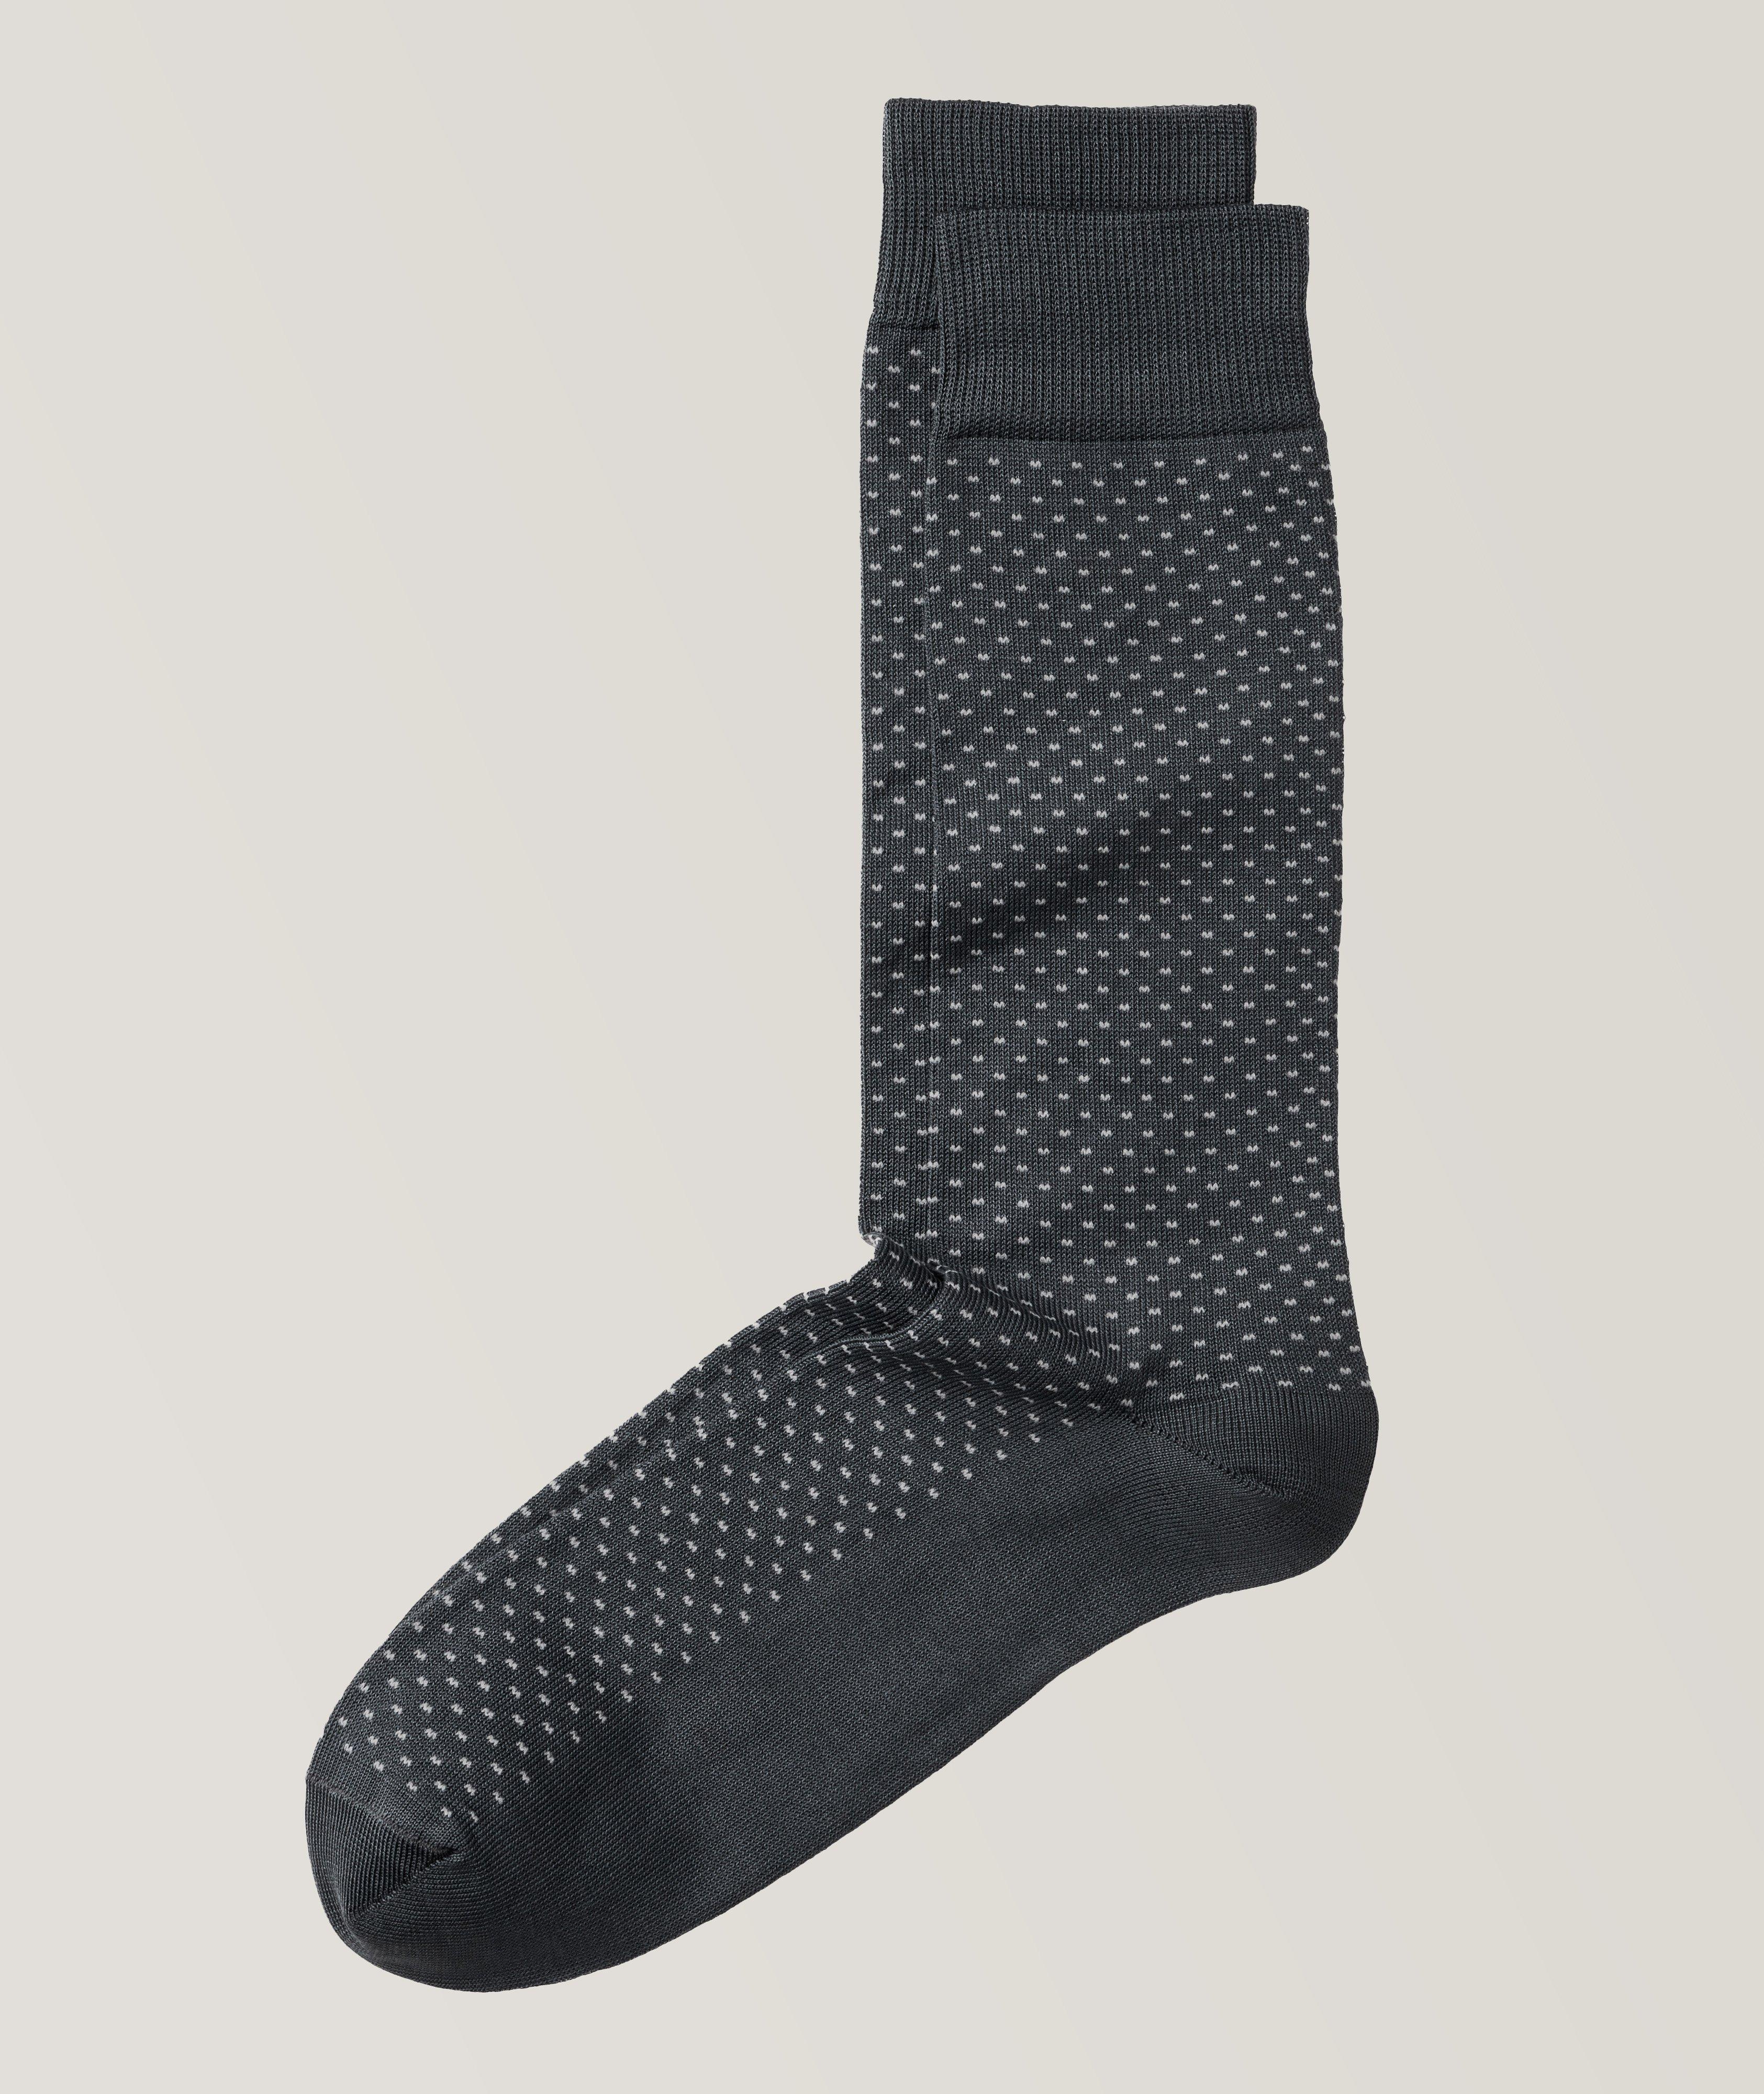 Micro Neat Pattern Cotton Blend Socks image 0